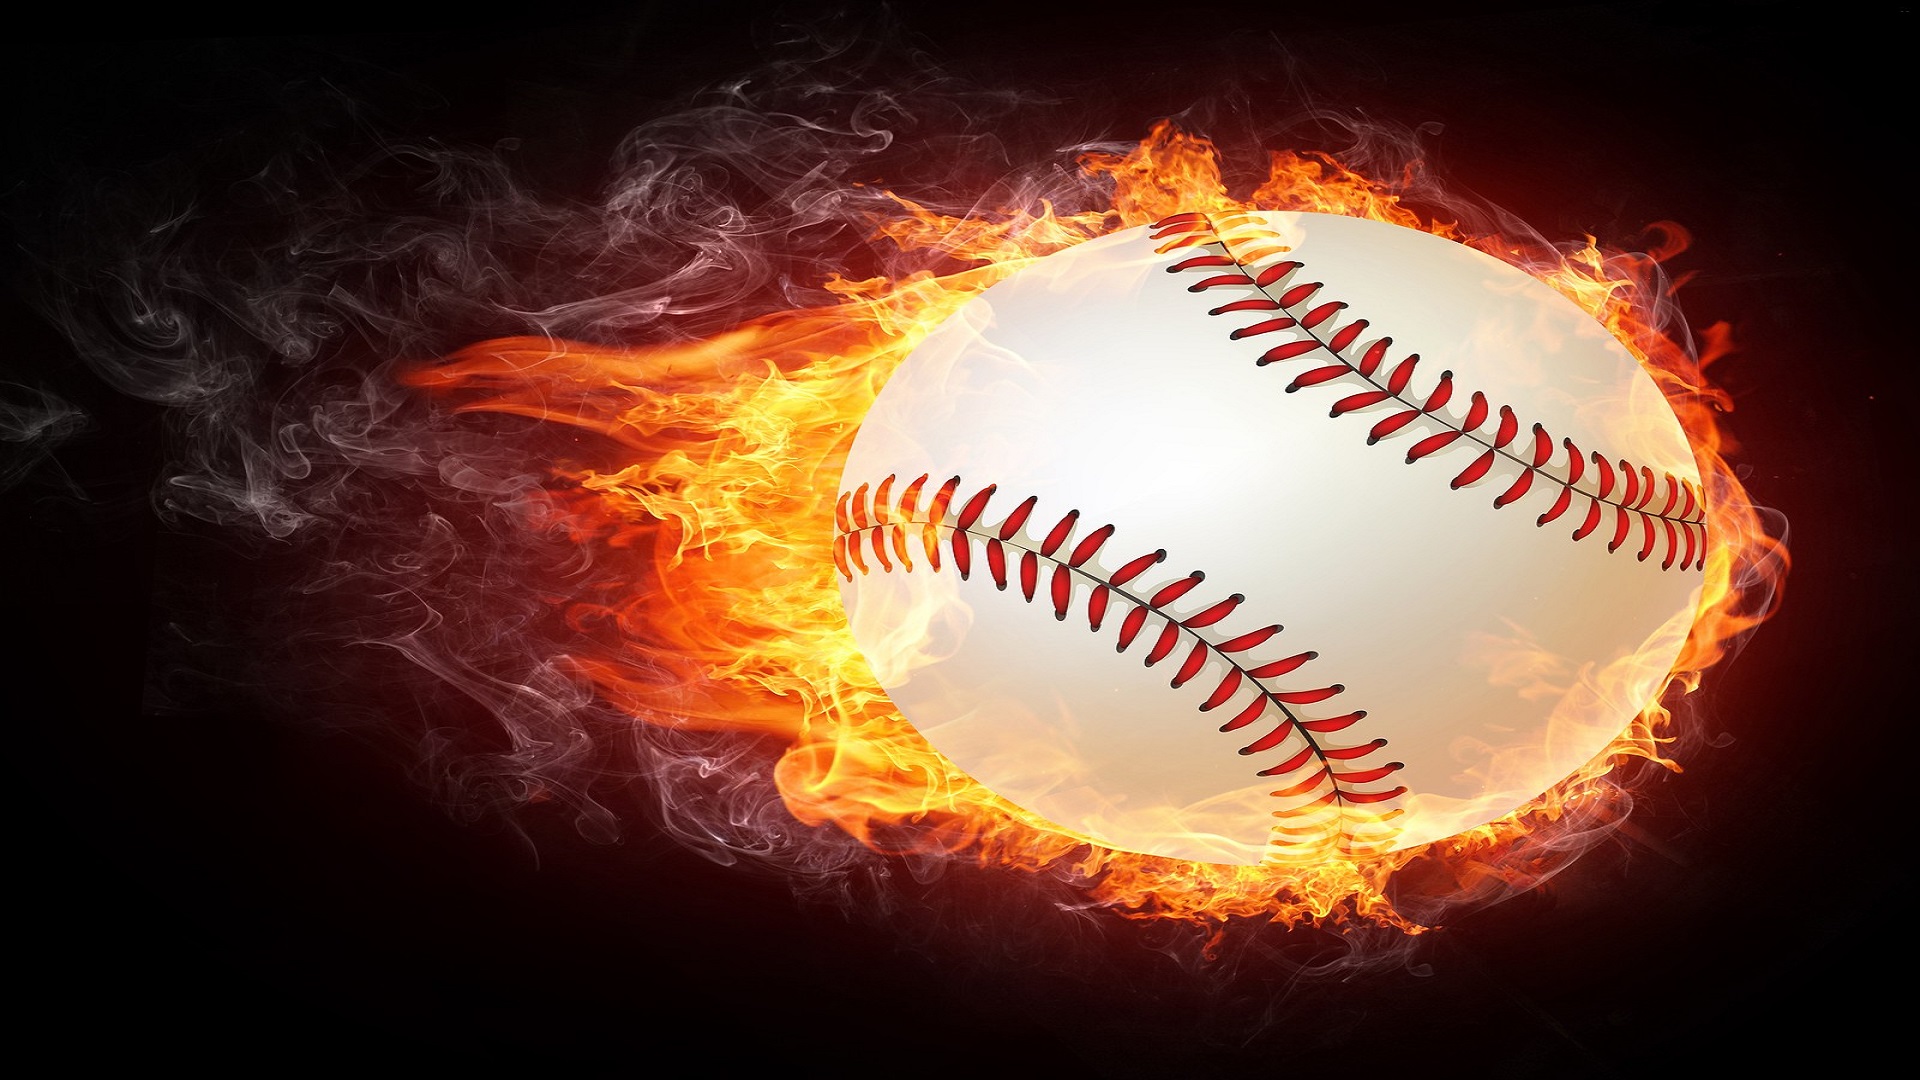 Fire Baseball Image HD Wallpaper For Desktop